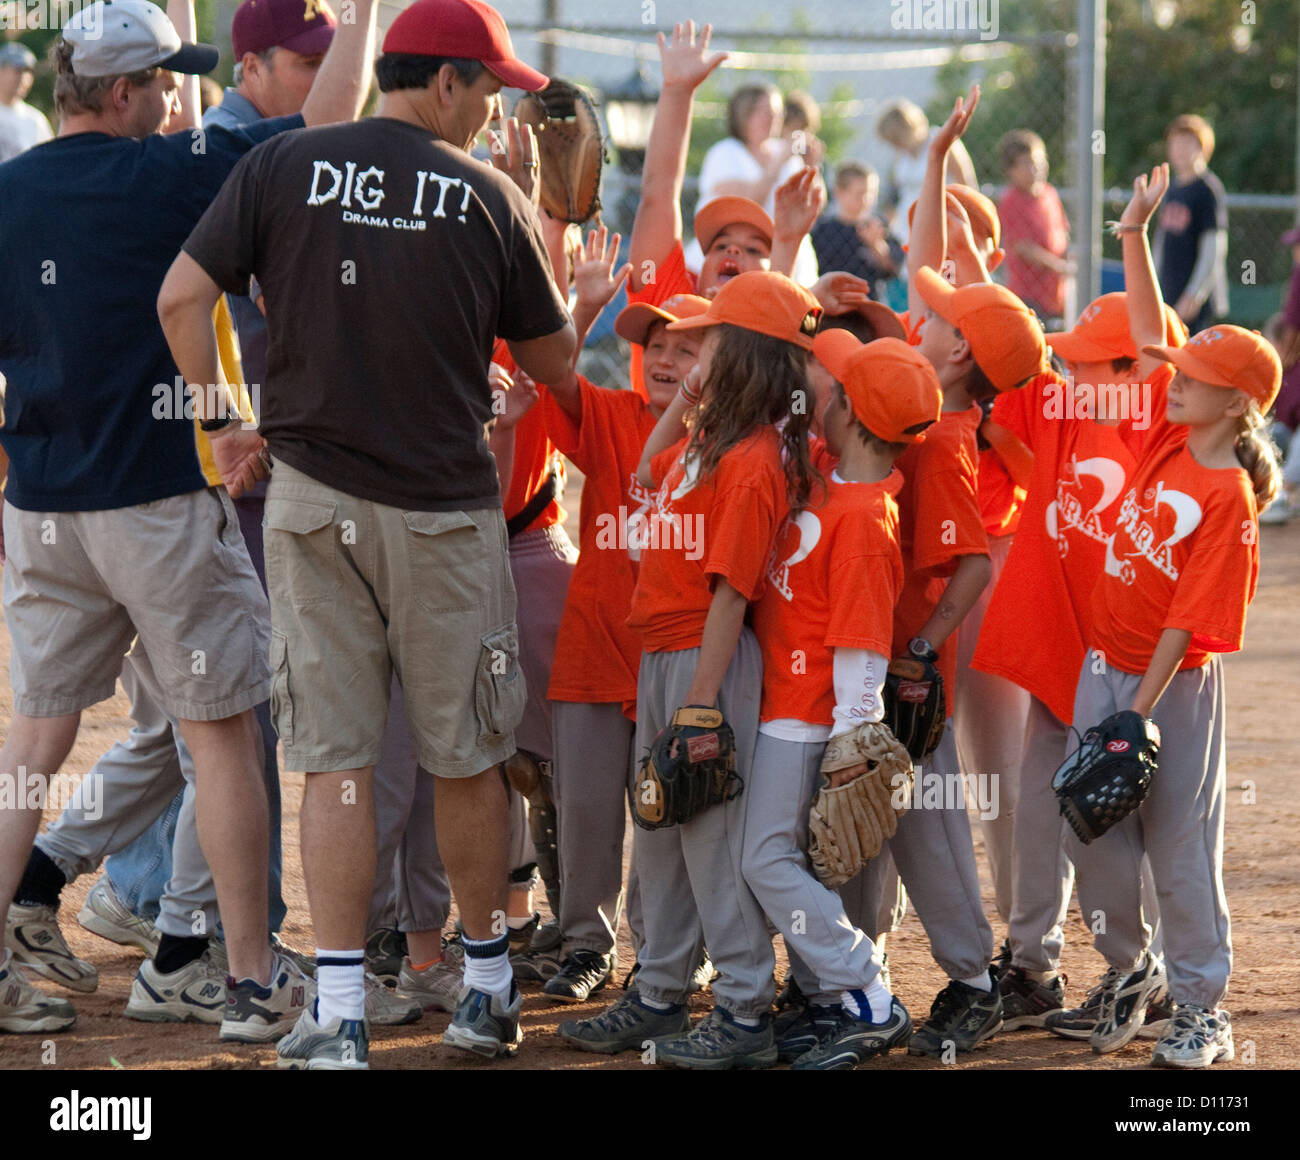 Niños y niñas mixto equipo de béisbol responder a entrenadores con manos levantadas de 7 años de edad. St Paul MN Minnesota EE.UU. Foto de stock